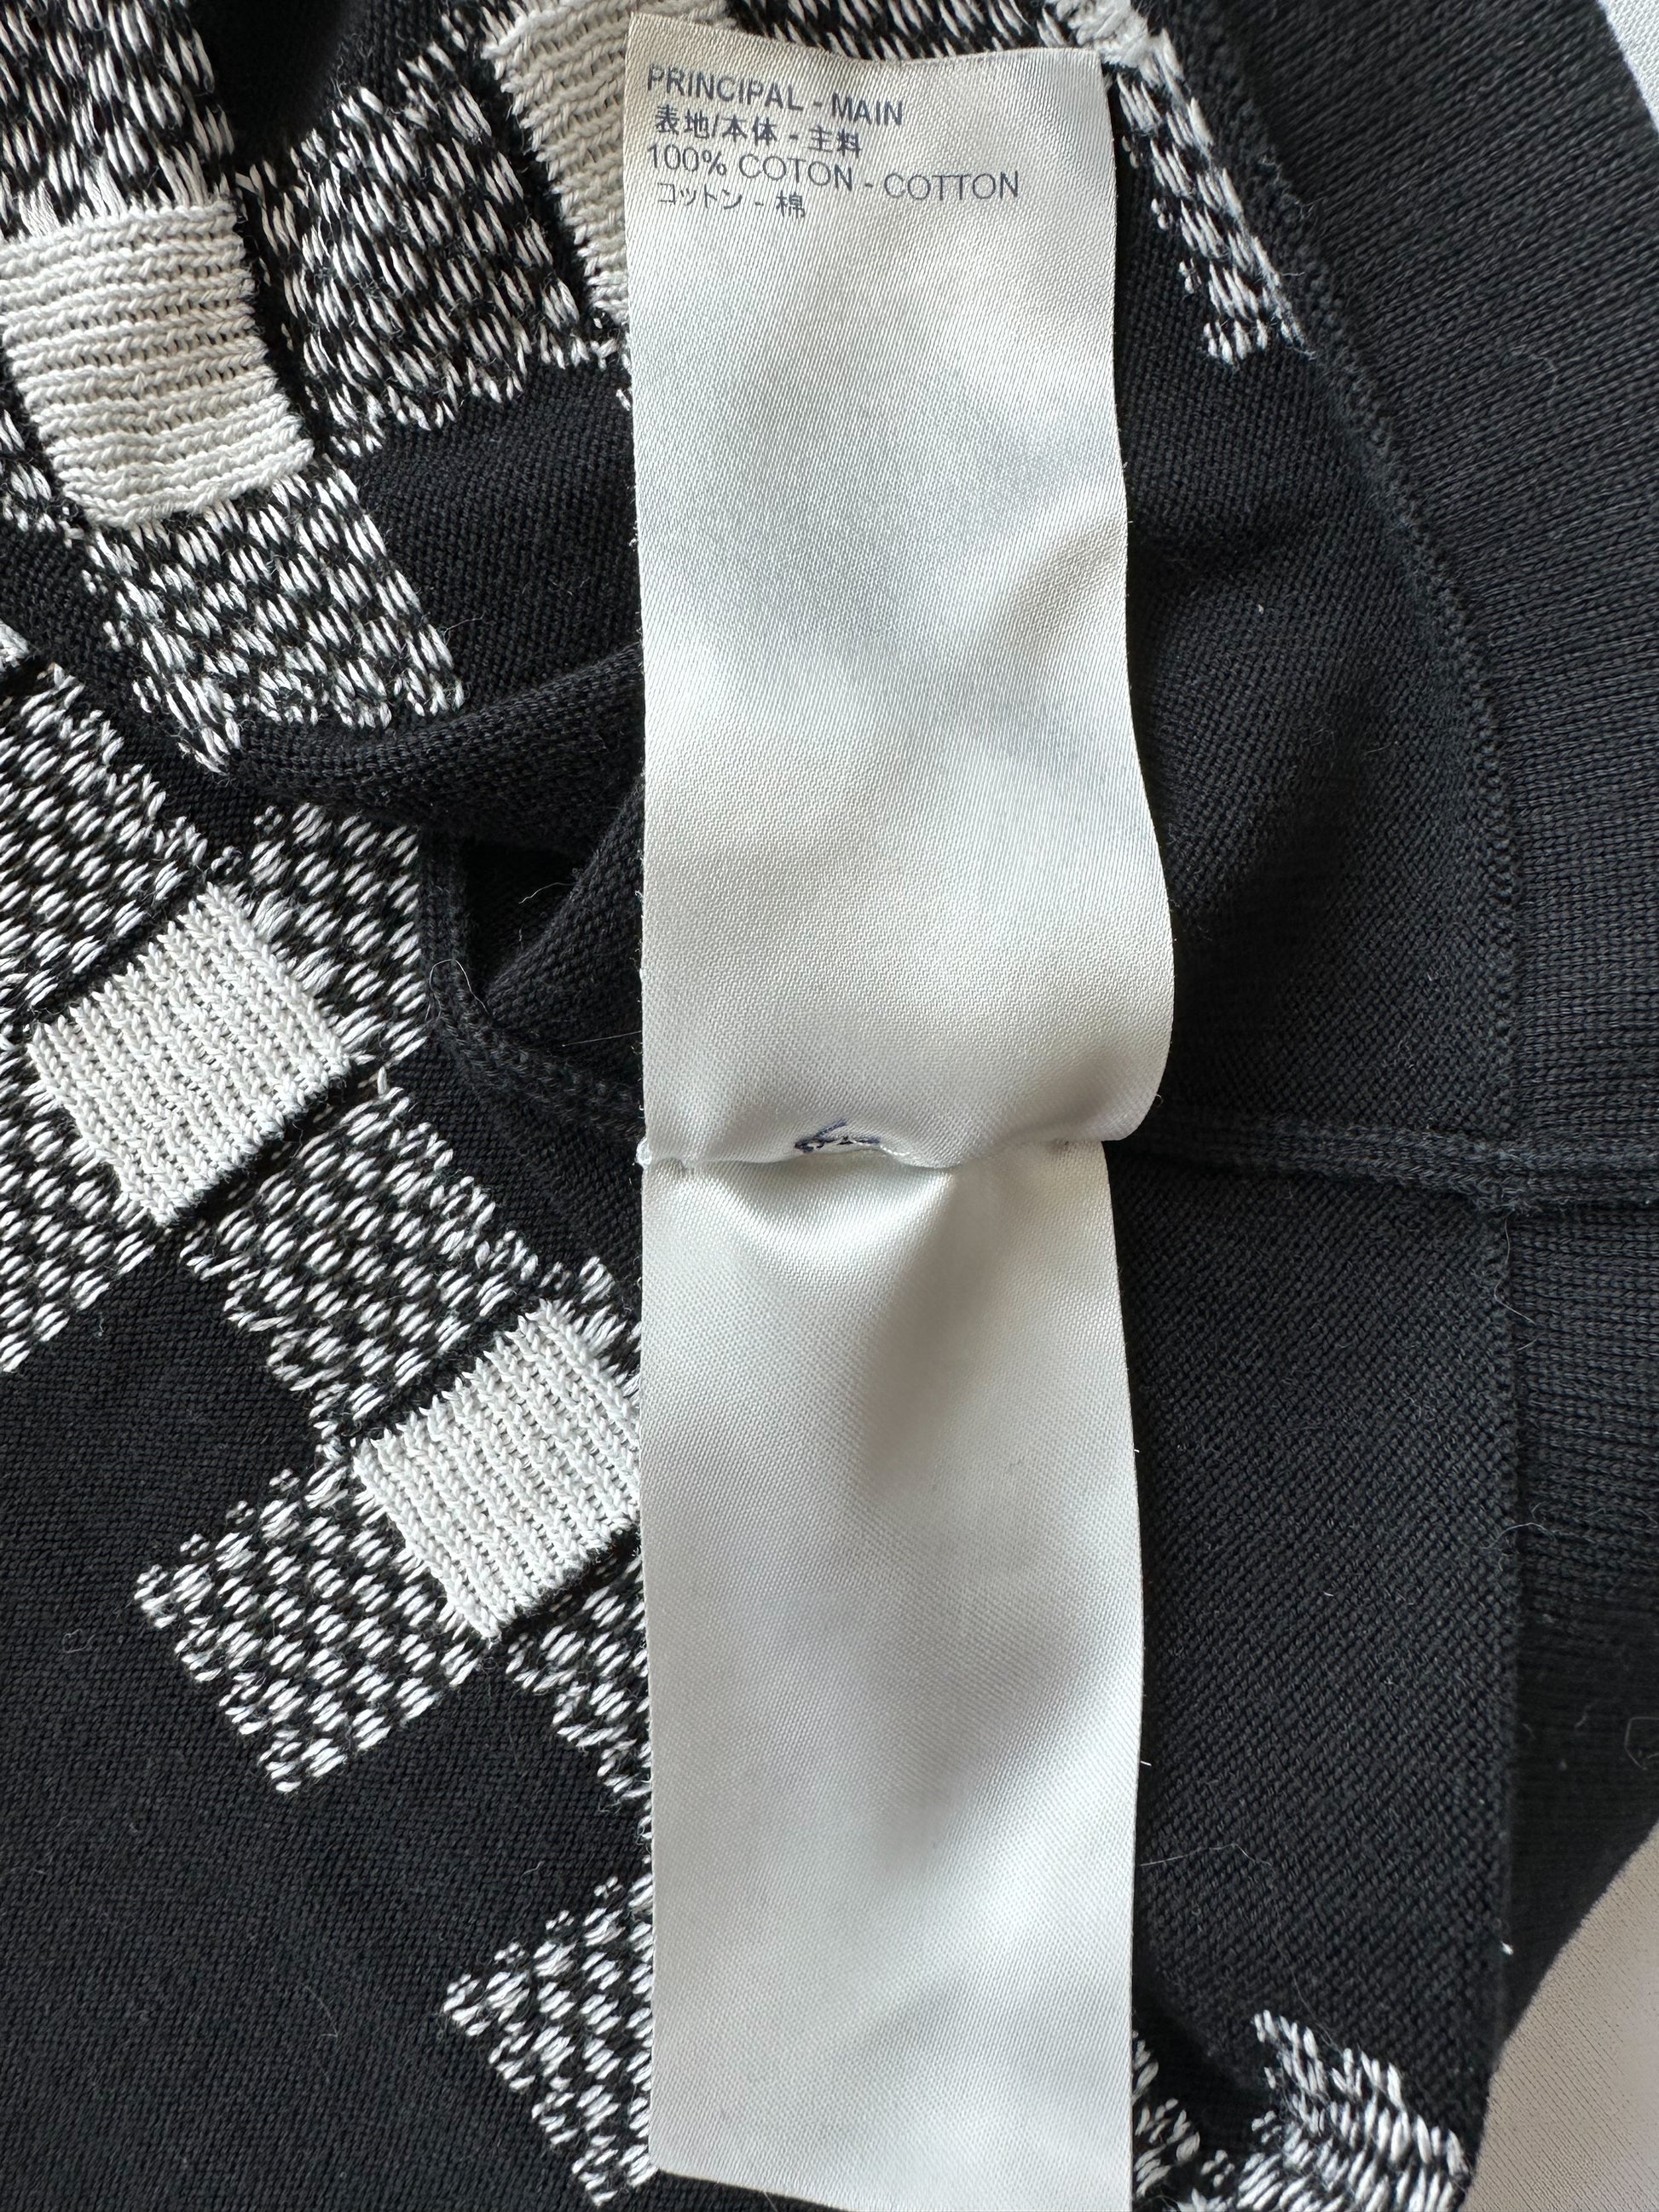 Louis Vuitton Men's Giant Checkered Intarsia Sweater Cotton